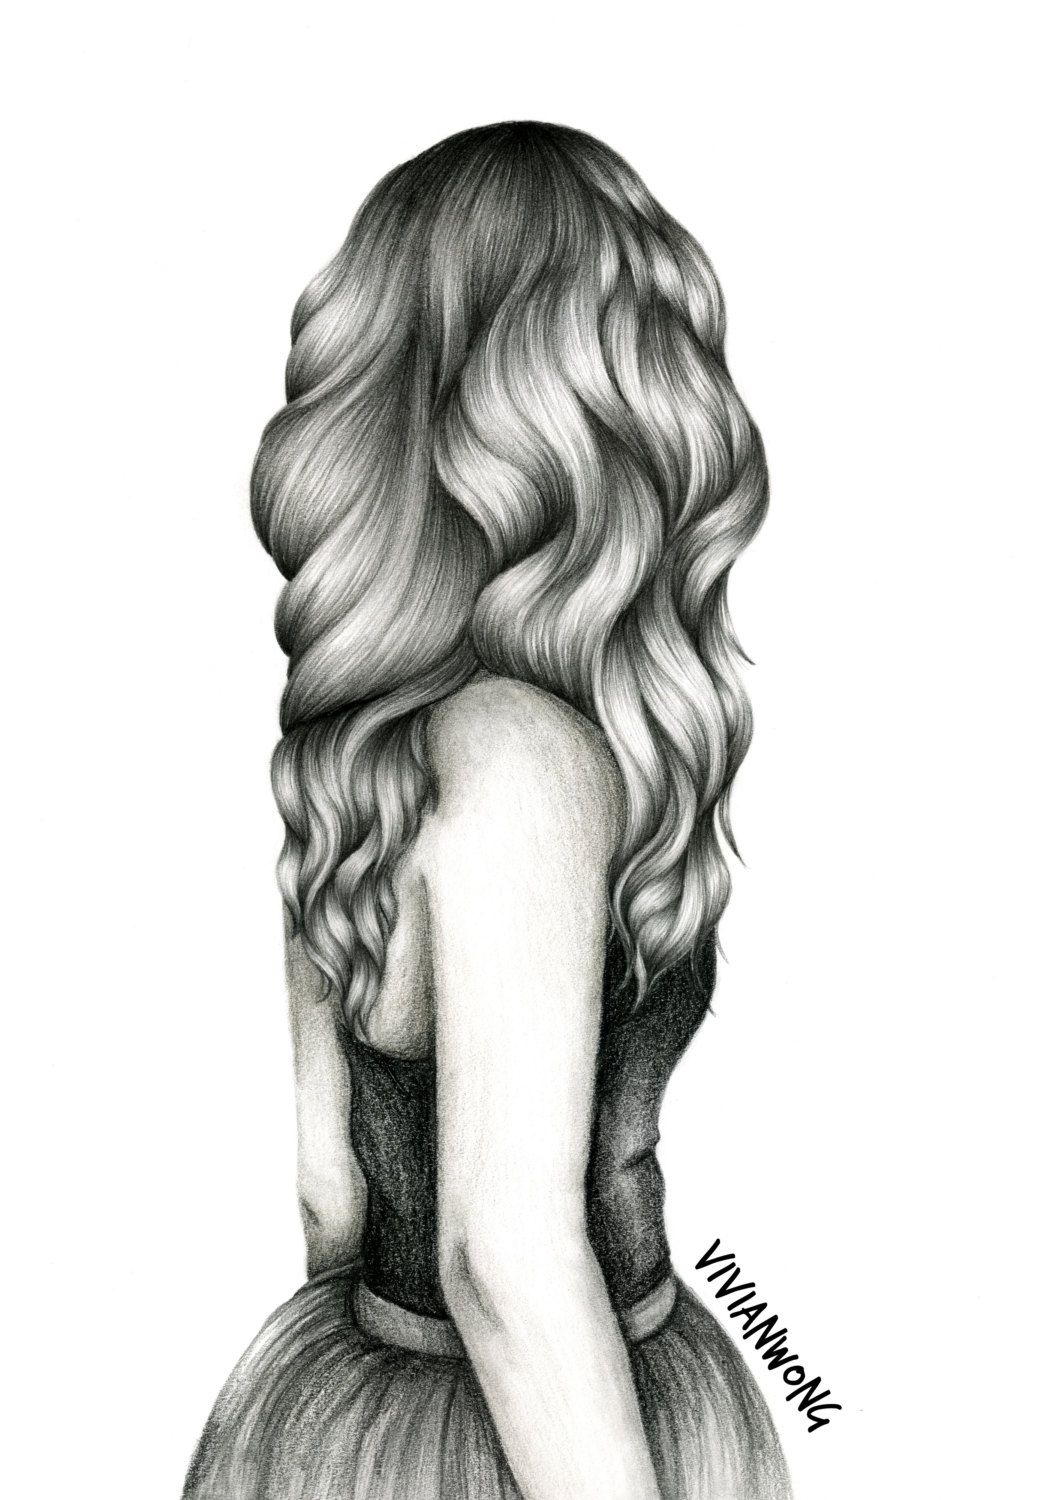 Wavy Hair Drawing